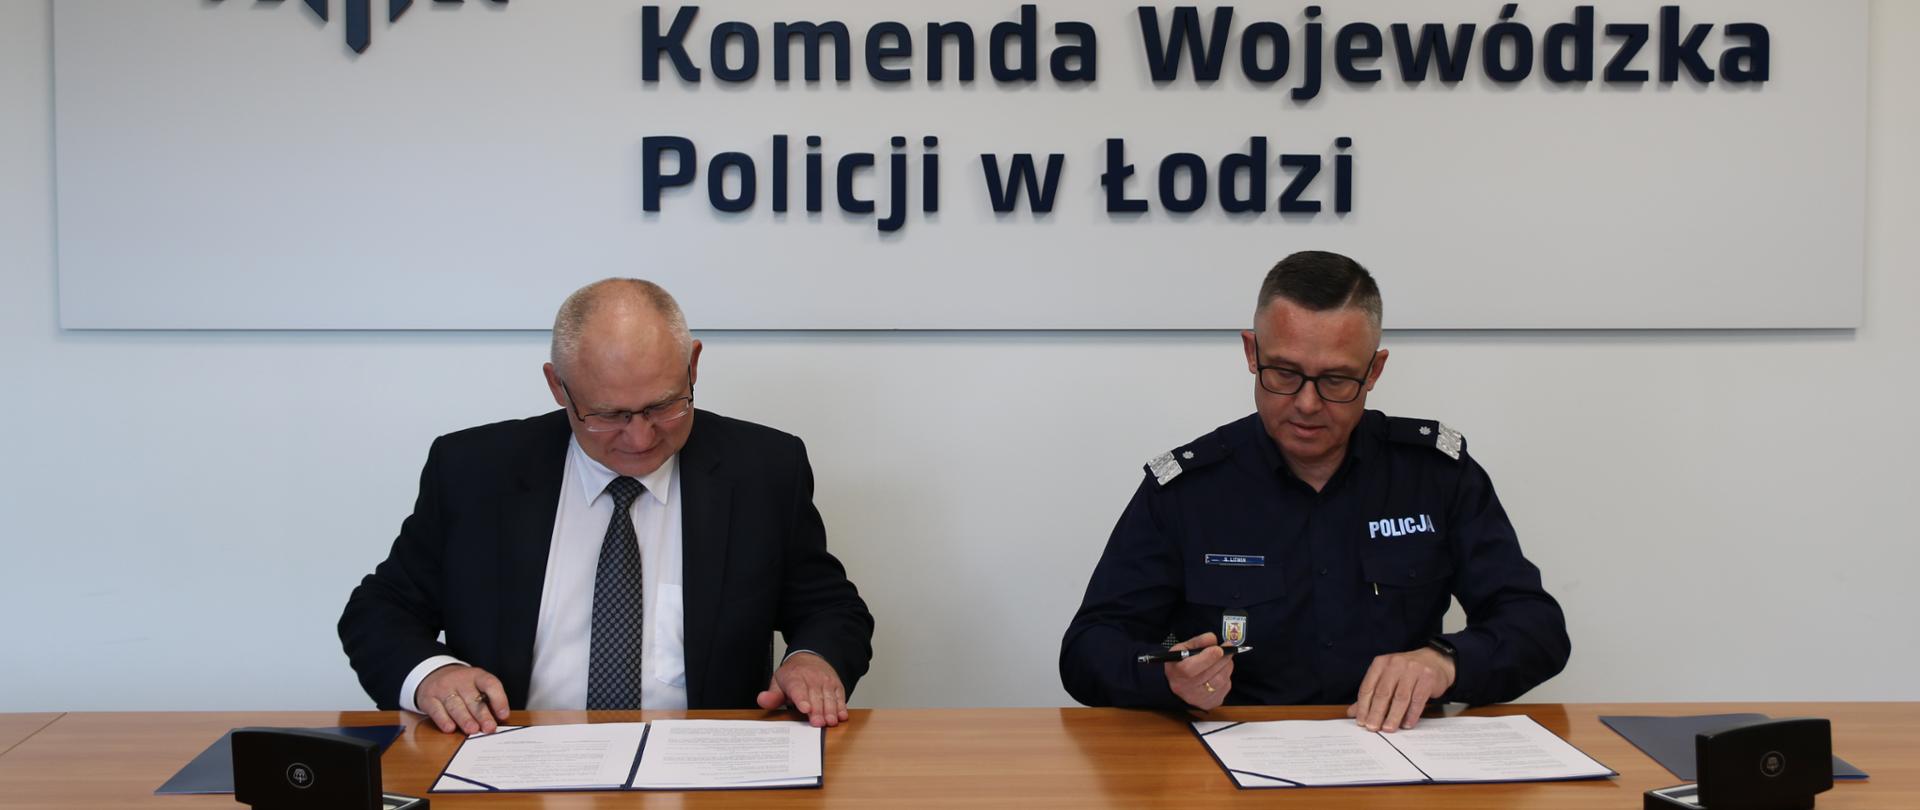 dwóch mężczyzn siedzi za stołem, mężczyzna z lewej strony zdjęcia ubrany jest garnitur, mężczyzna z prawej strony zdjęcia ubrany jest w mundur z widocznym napisem Policja, nad nimi widoczny napis Policja Komenda Wojewódzka Policji w Łodzi 